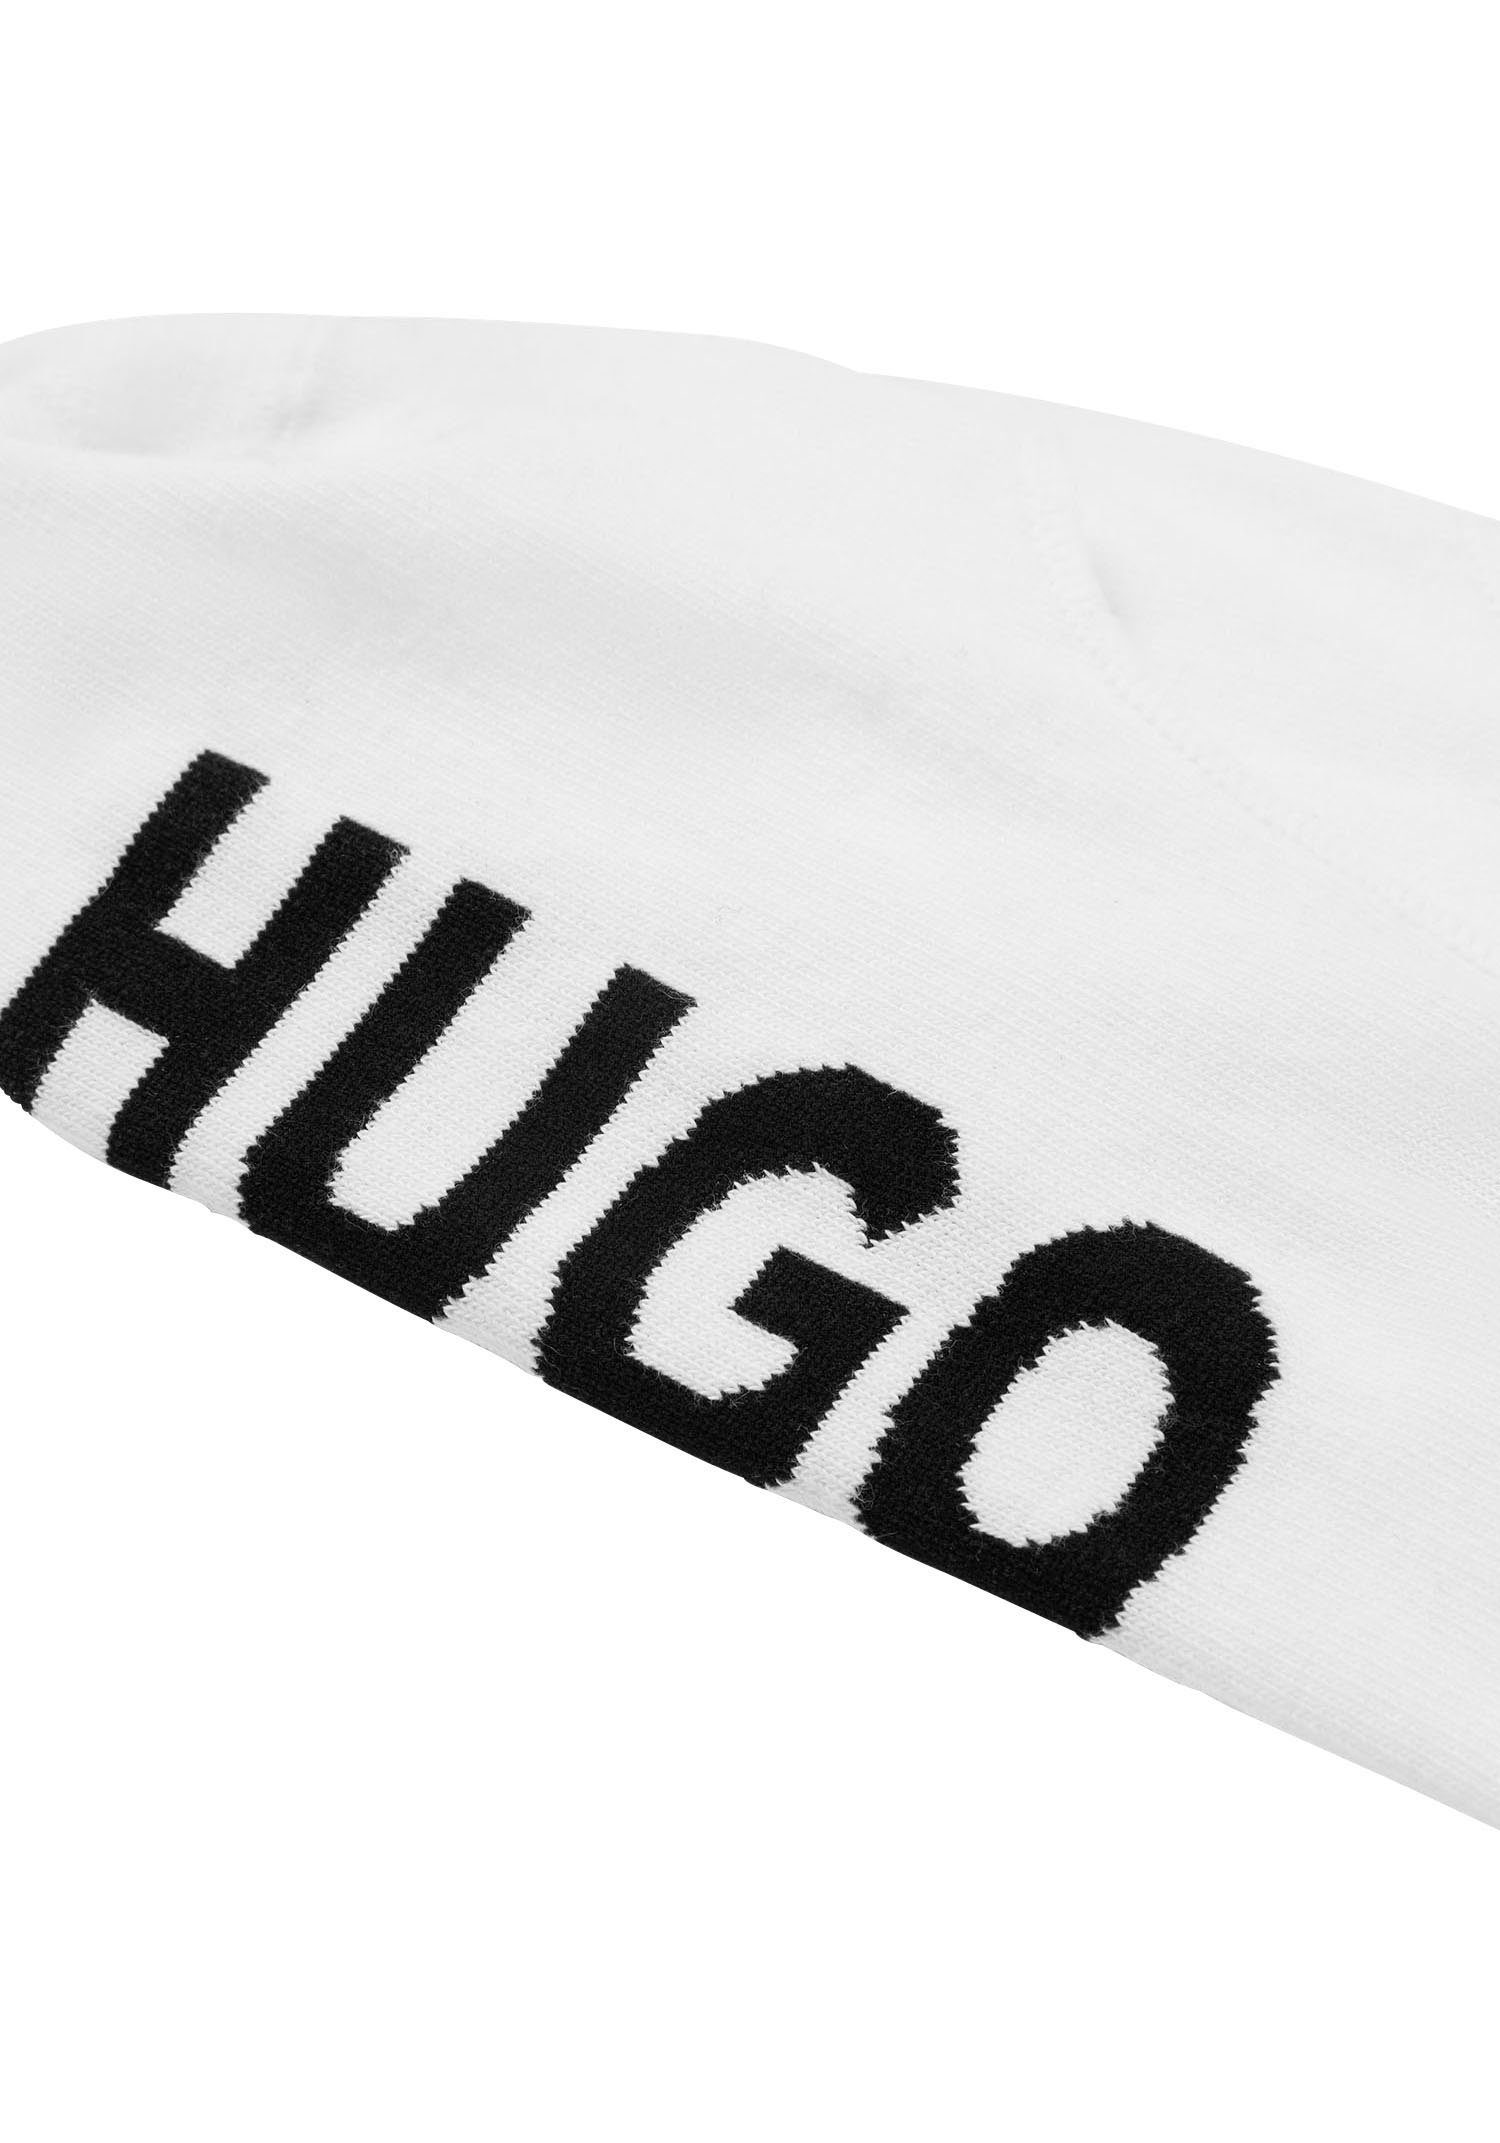 HUGO 2P white (Packung, Sneakersocken CC SL 2-Paar) LOGO